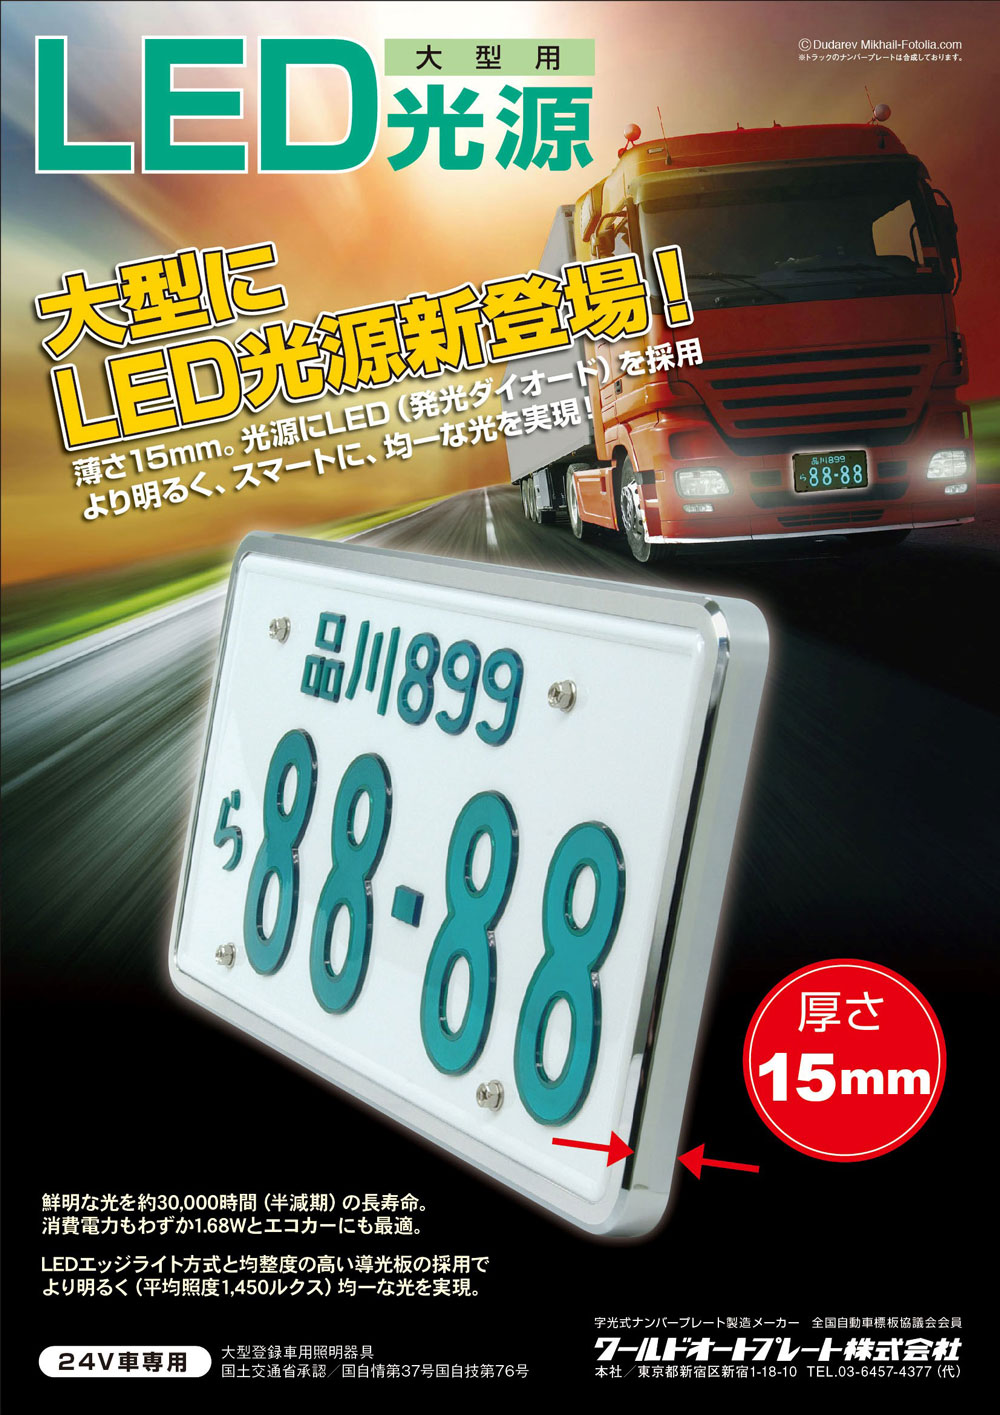 16896円 高級感 AIR LED 字光式 ナンバープレート 2枚セット プレジデント PGF50 送料無料 3年保証